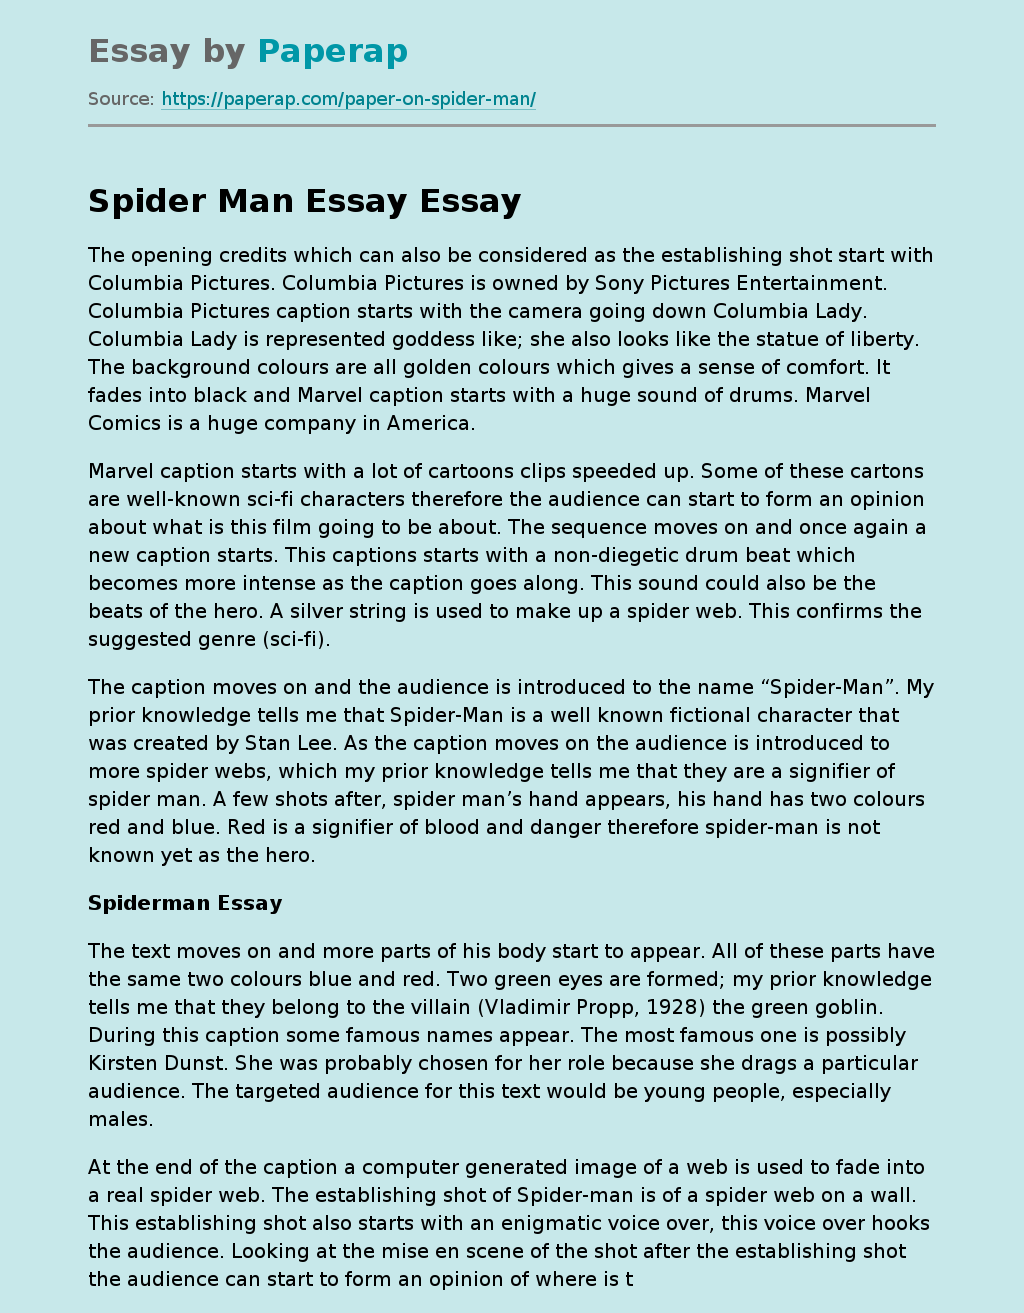 how do i write an essay for spider man